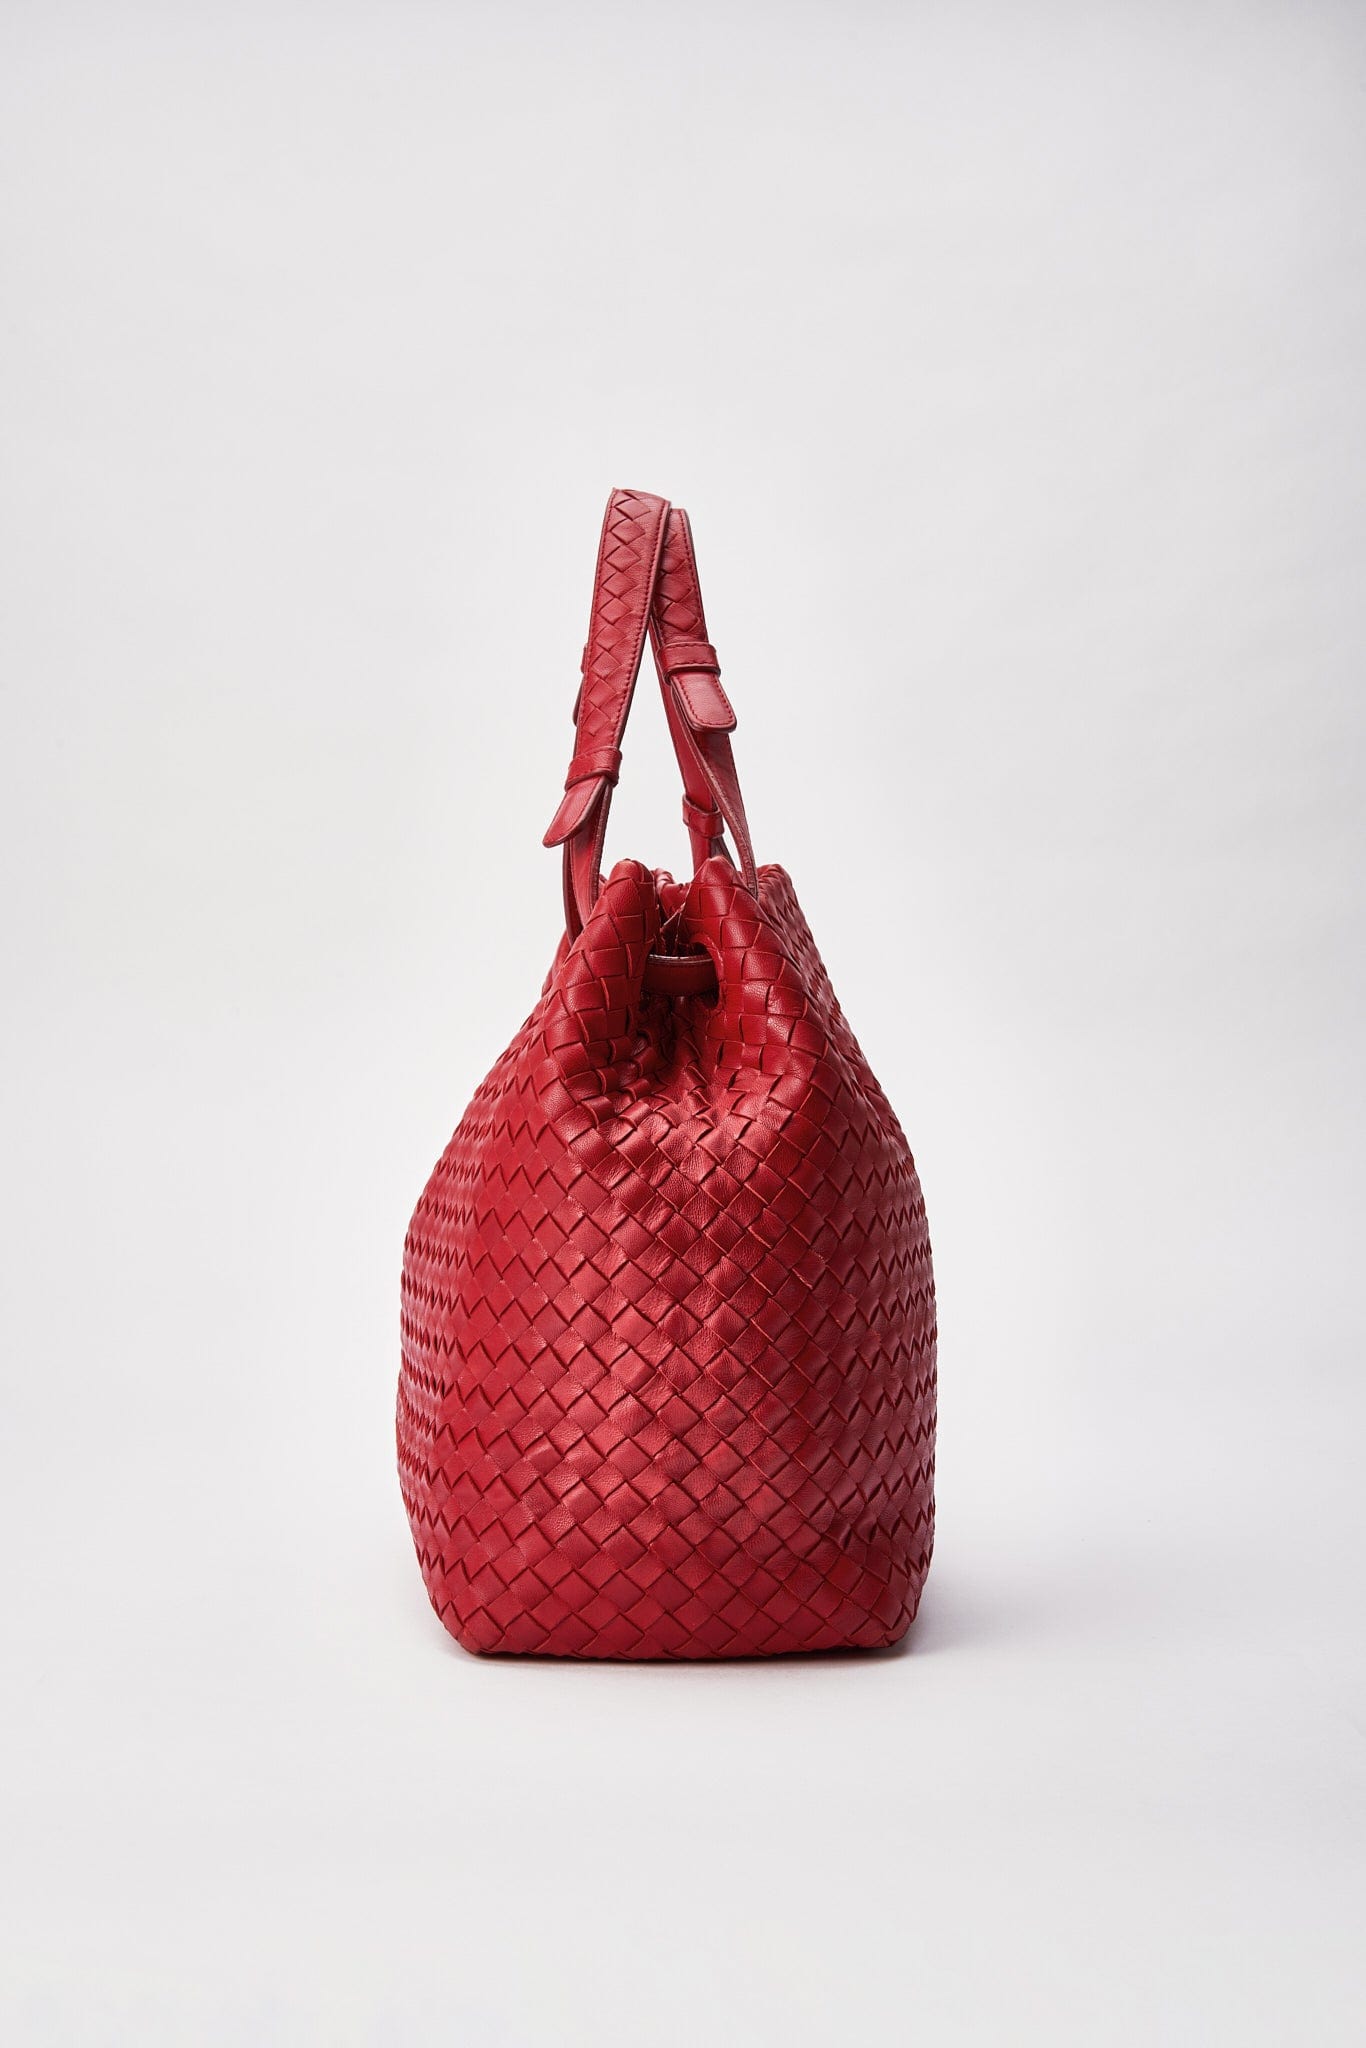 Vintage Bottega Veneta Red Intrecciato Leather Shoulder Bag